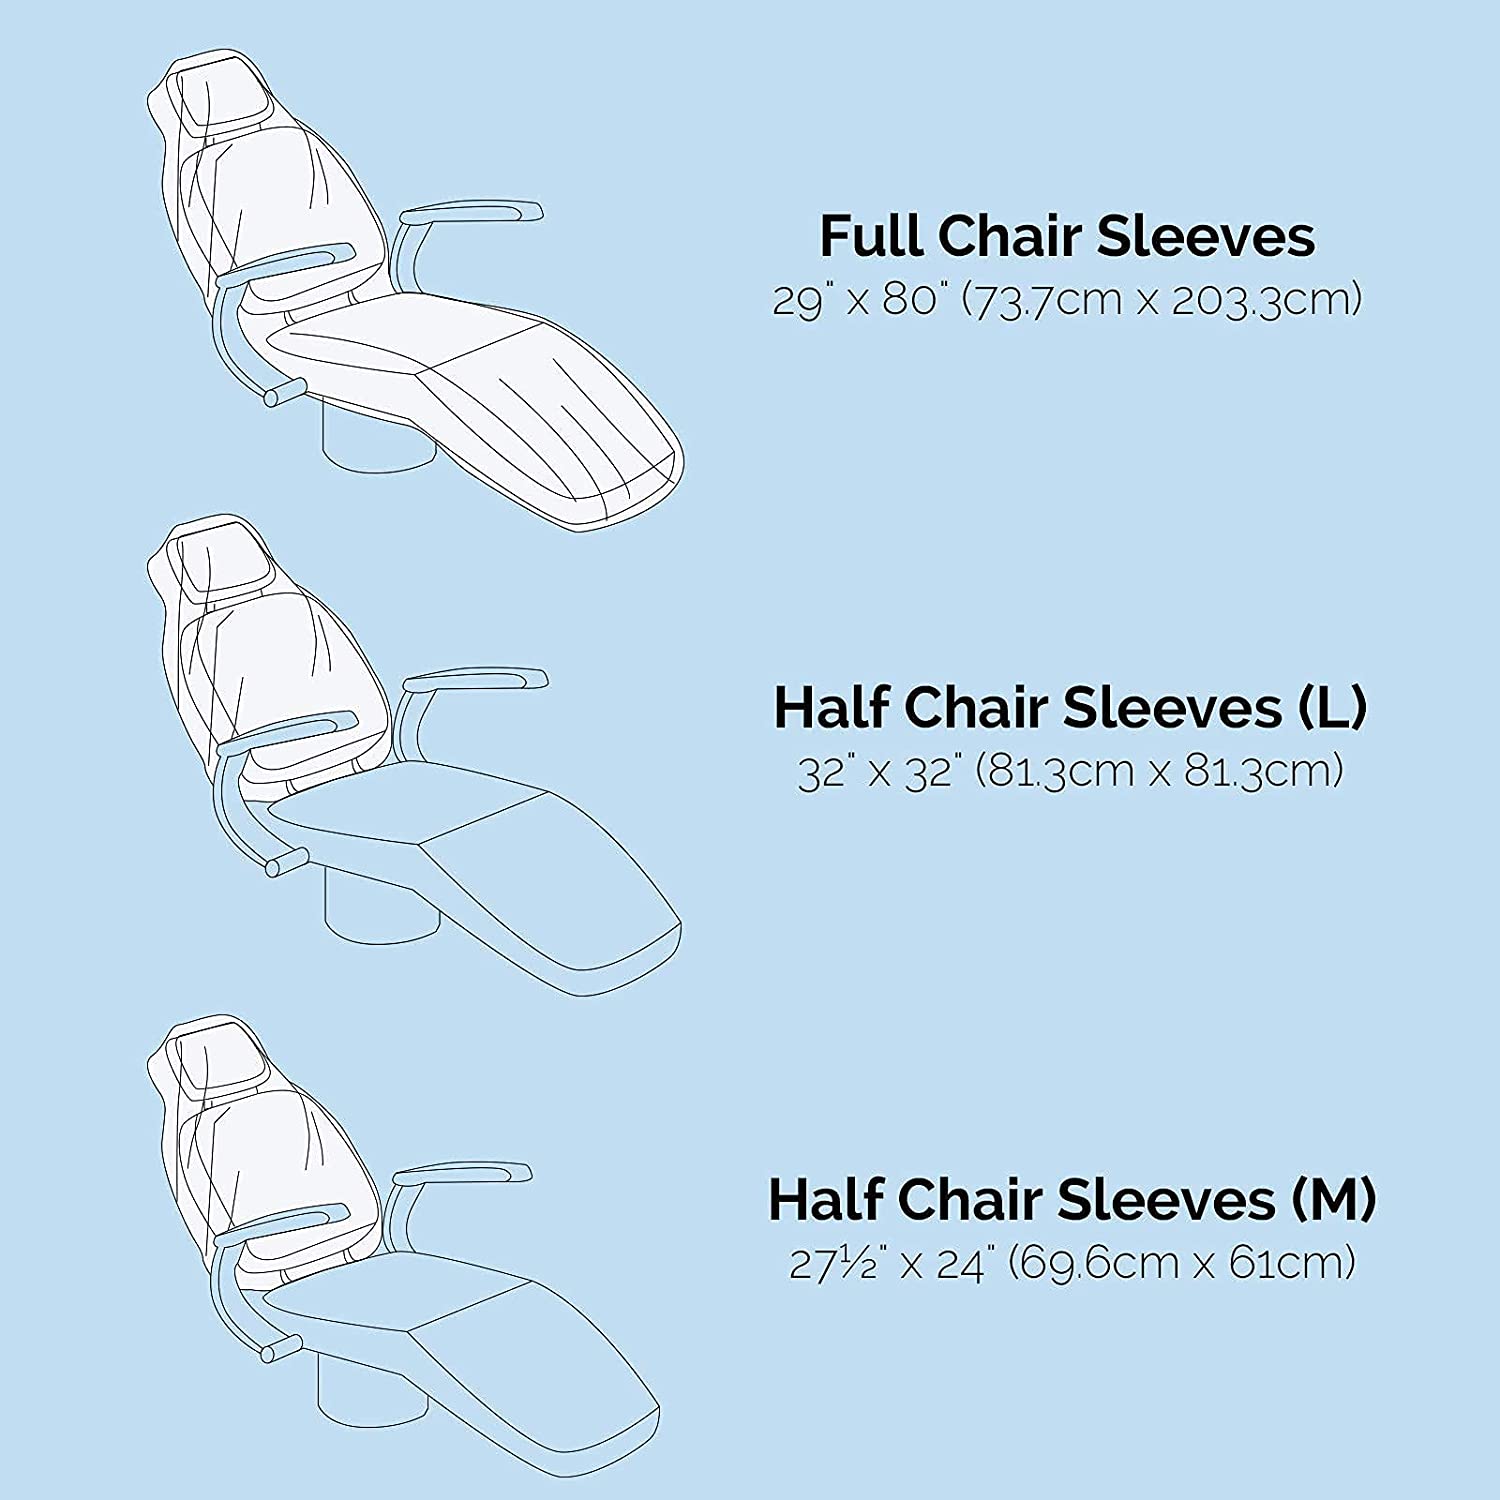 購入使い捨てプラスチック完全に透明な歯科用椅子のスリーブ,使い捨てプラスチック完全に透明な歯科用椅子のスリーブ価格,使い捨てプラスチック完全に透明な歯科用椅子のスリーブブランド,使い捨てプラスチック完全に透明な歯科用椅子のスリーブメーカー,使い捨てプラスチック完全に透明な歯科用椅子のスリーブ市場,使い捨てプラスチック完全に透明な歯科用椅子のスリーブ会社